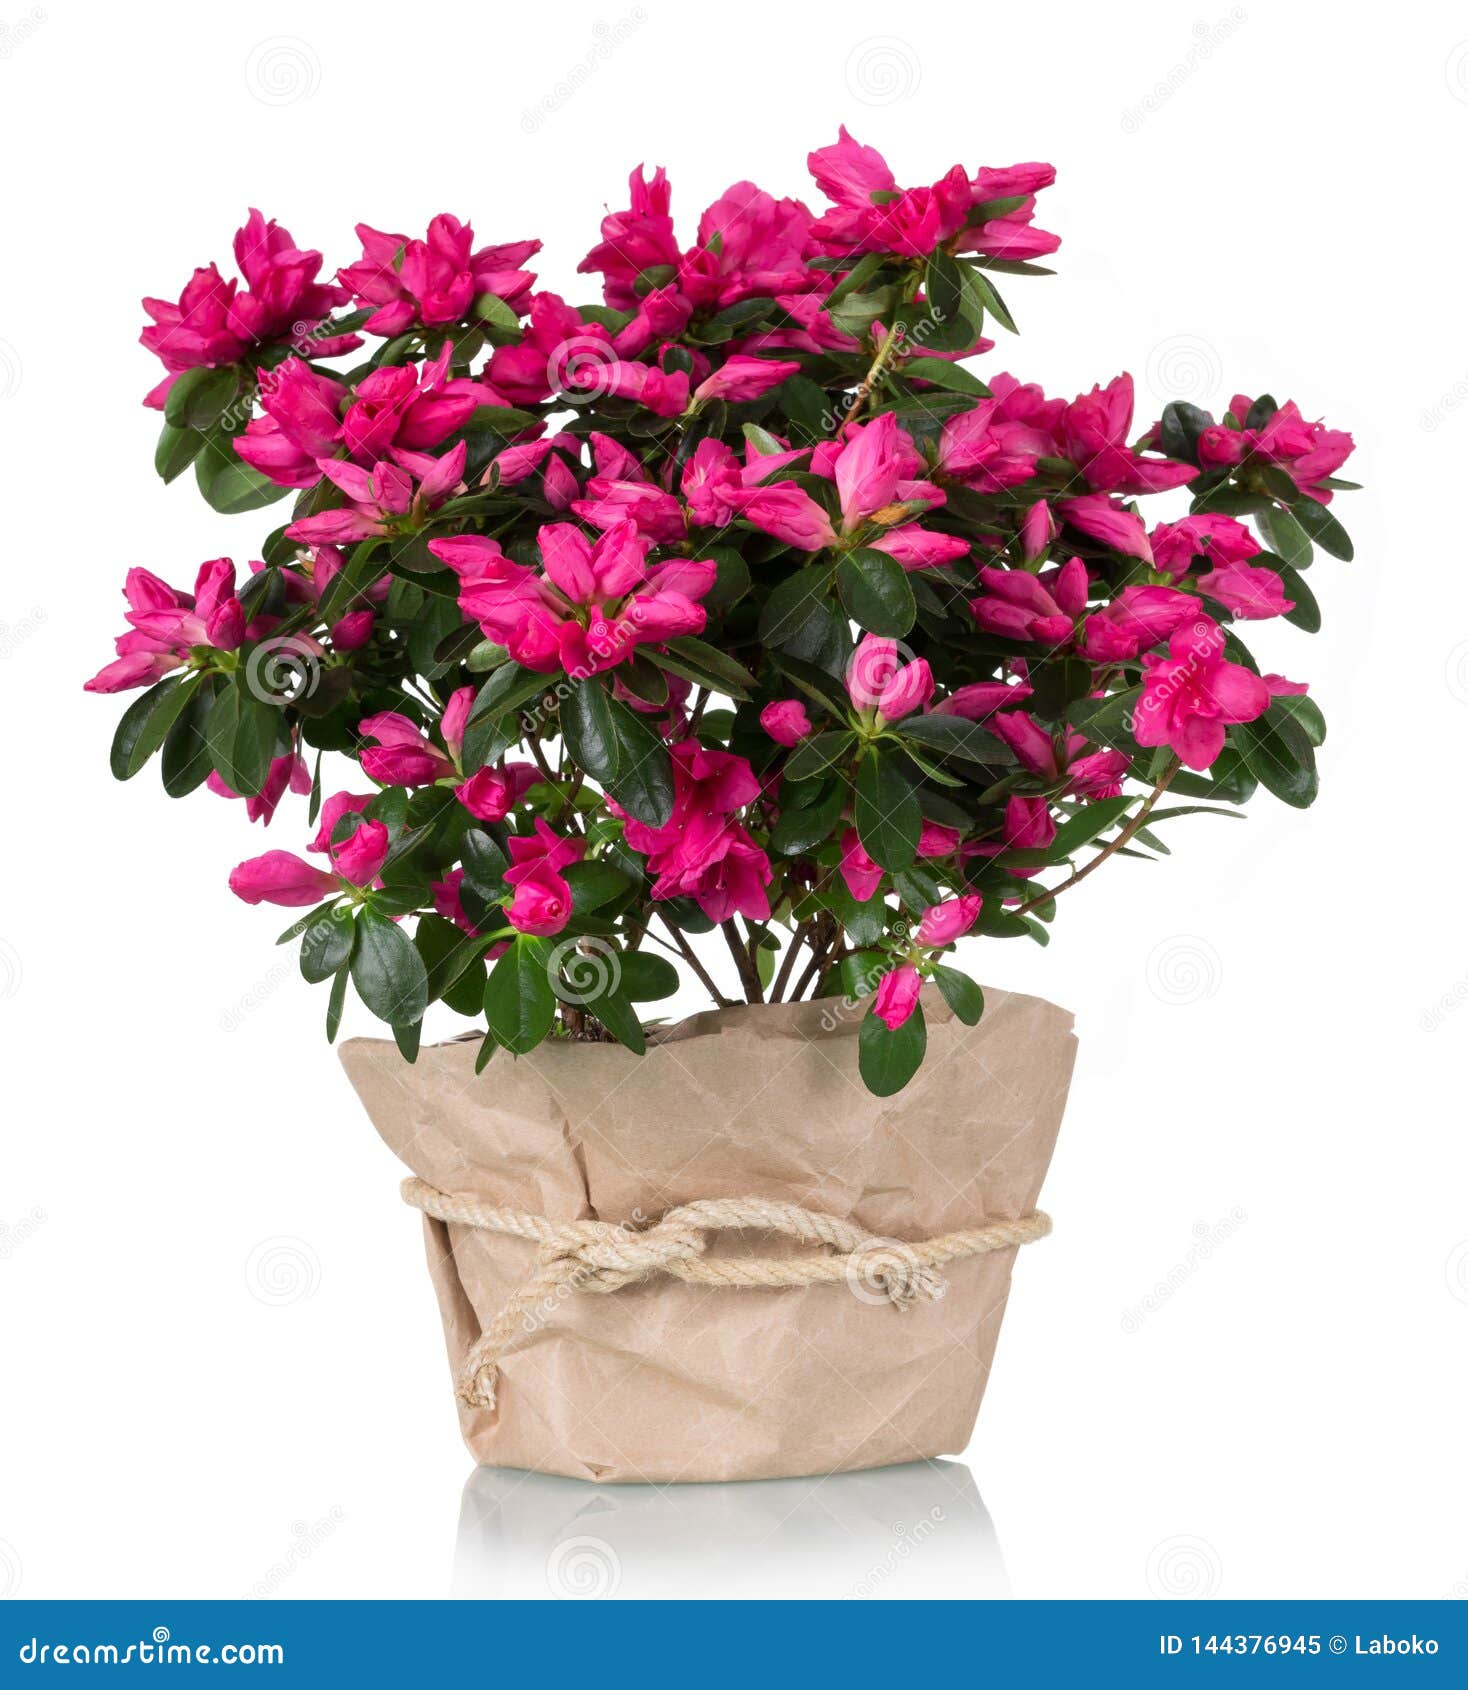 luxury azalea flower pink in pot  on white